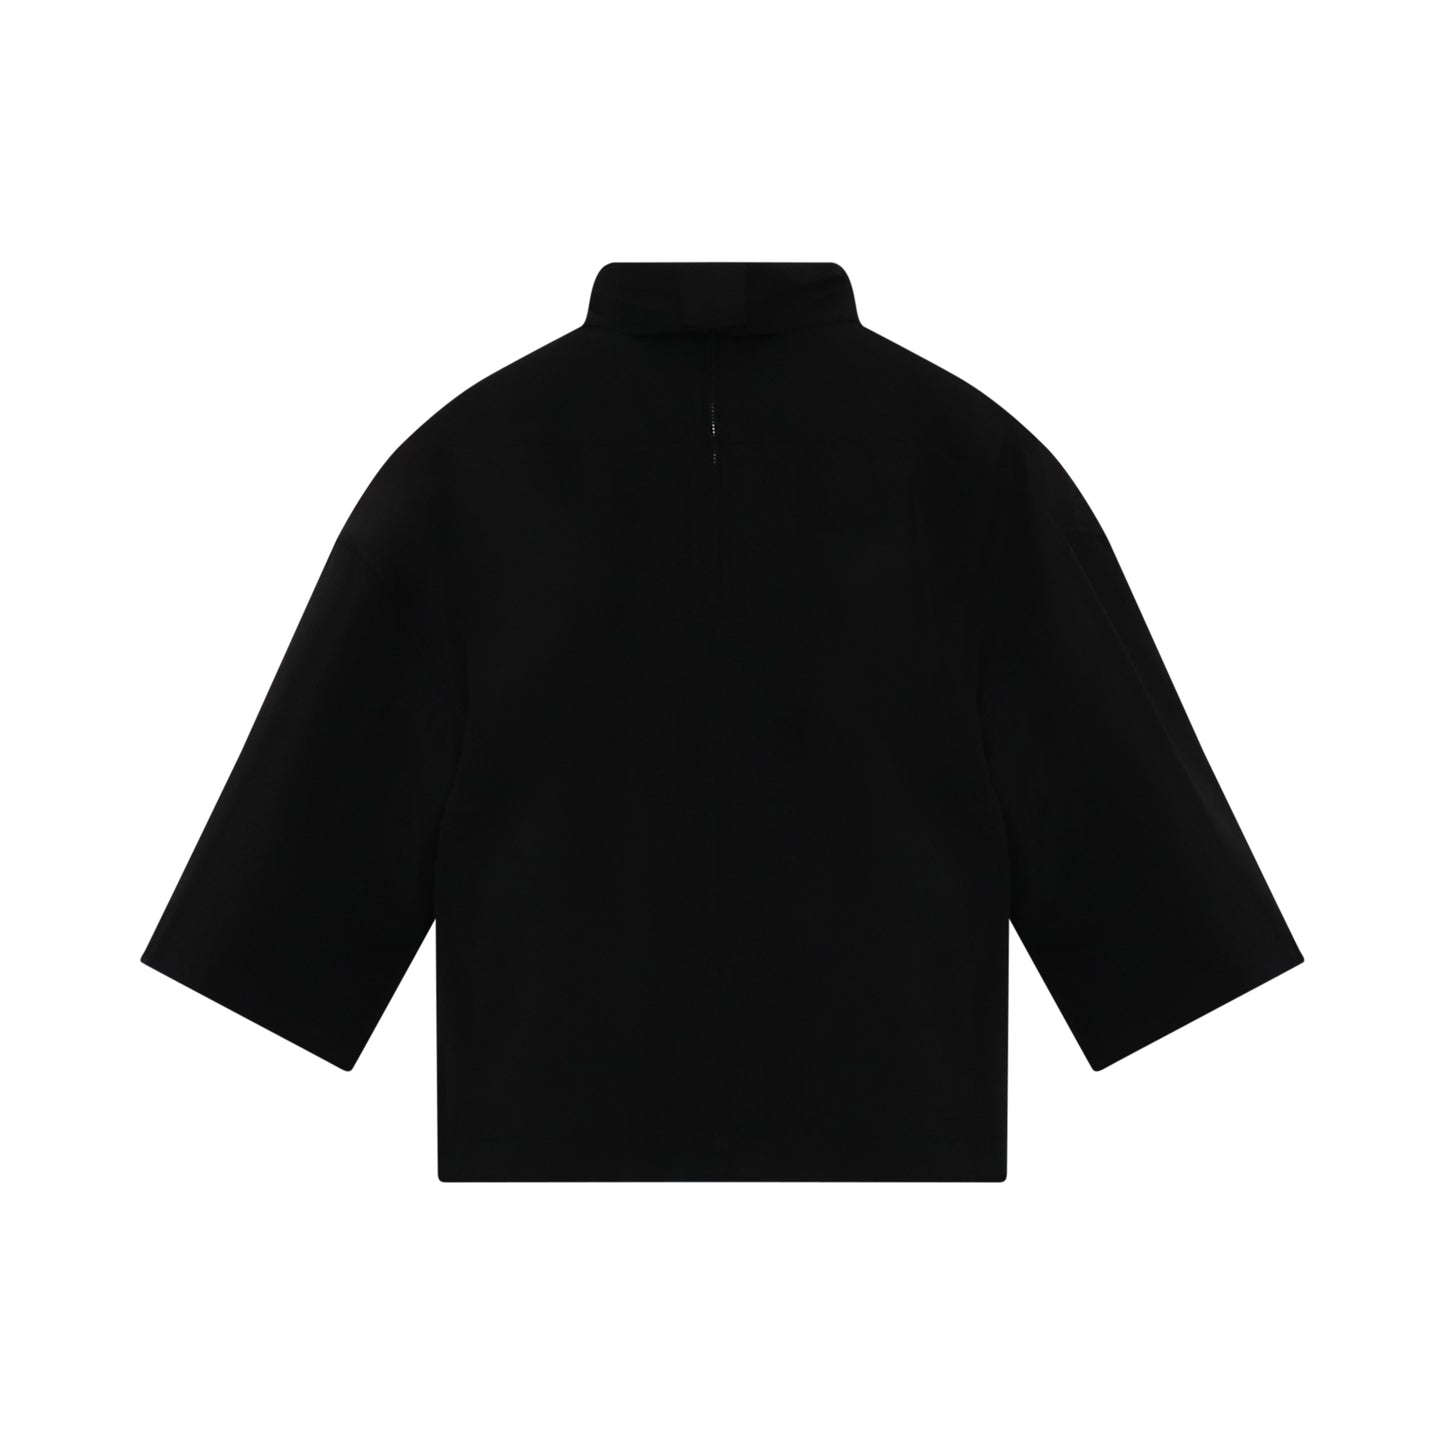 Walrus Windbreaker Jacket in Black